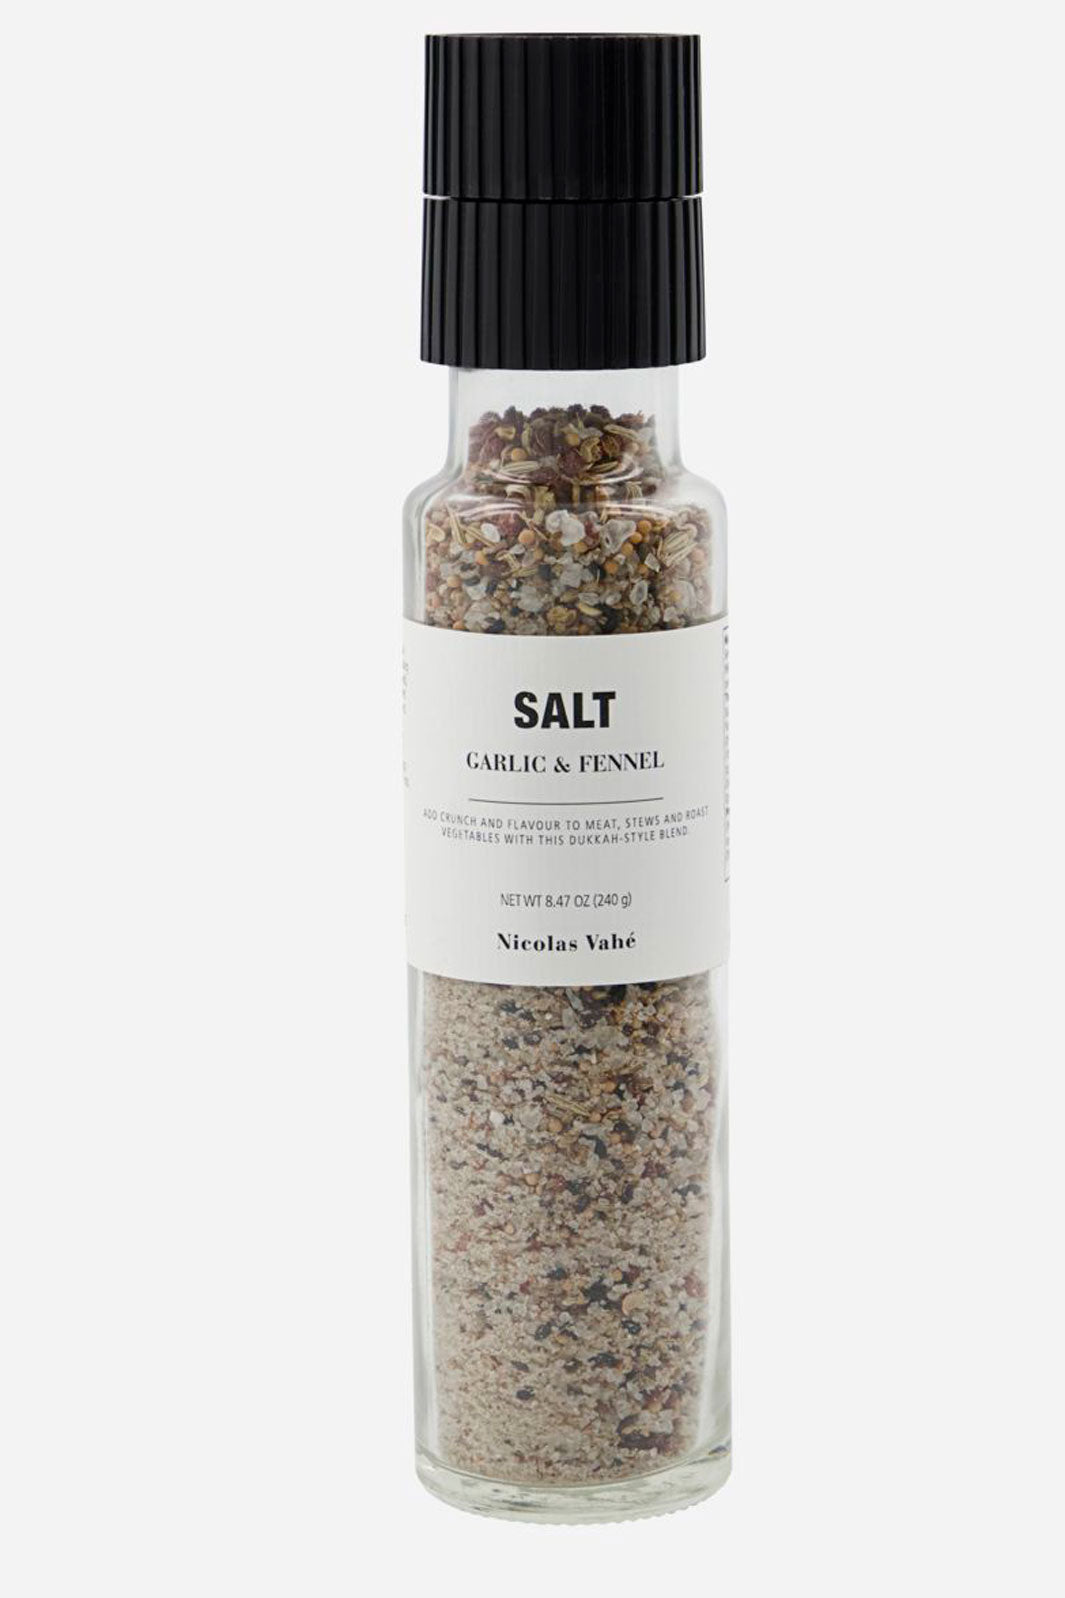 Nicolas Vahe - Salt, Garlic & Fennel Salt 